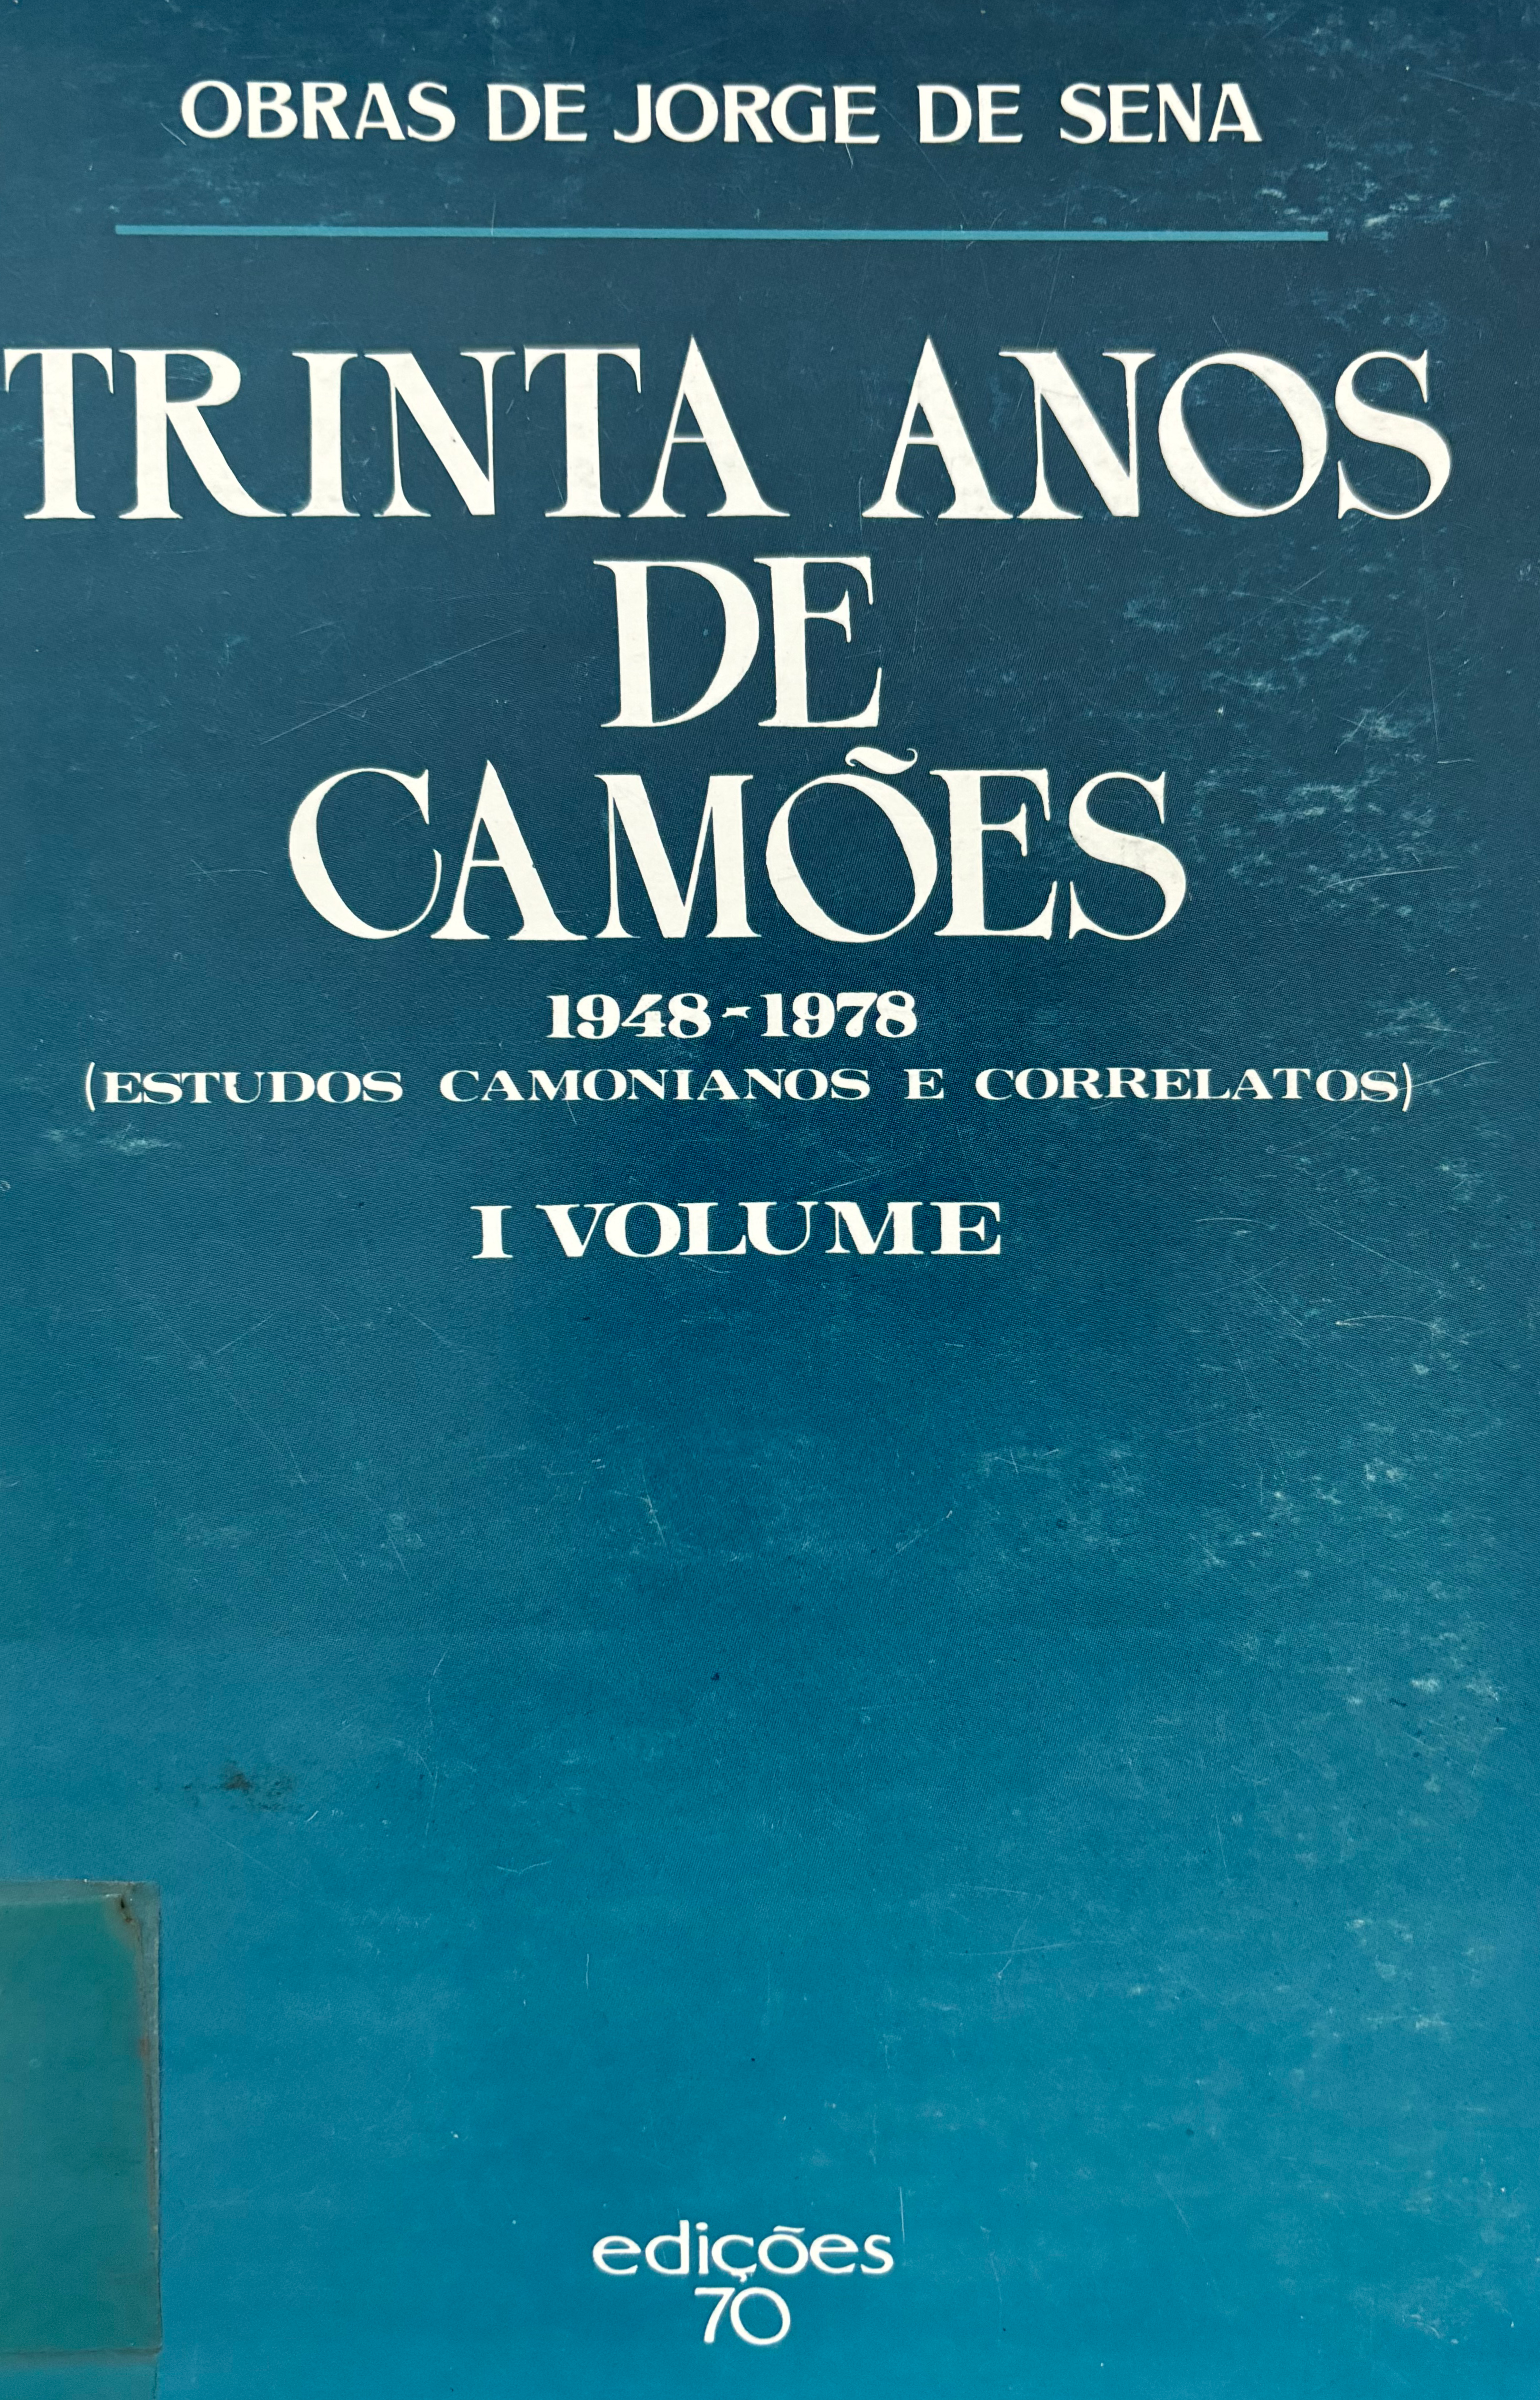 Trinta anos de Camões 1948-1978 